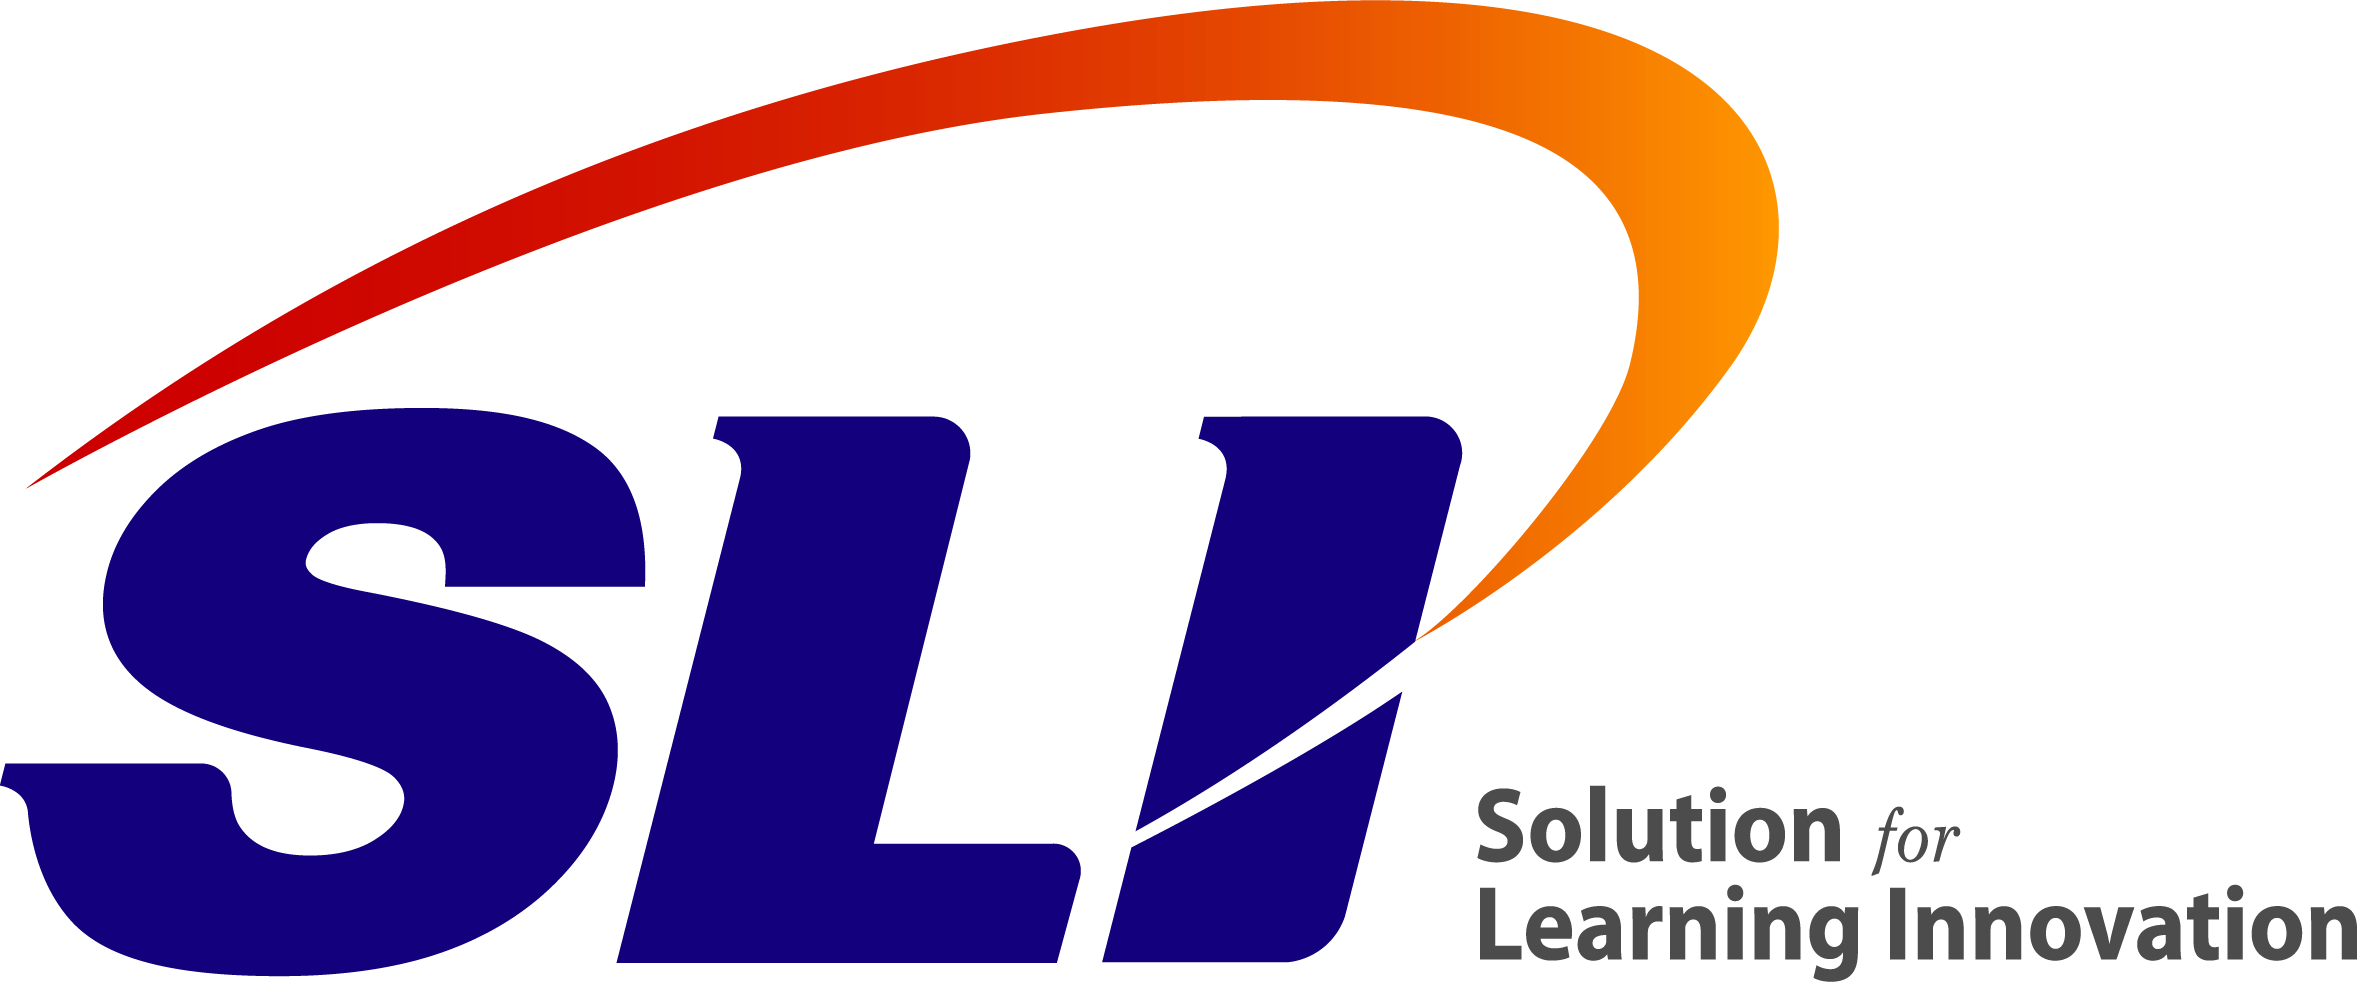 SLI education